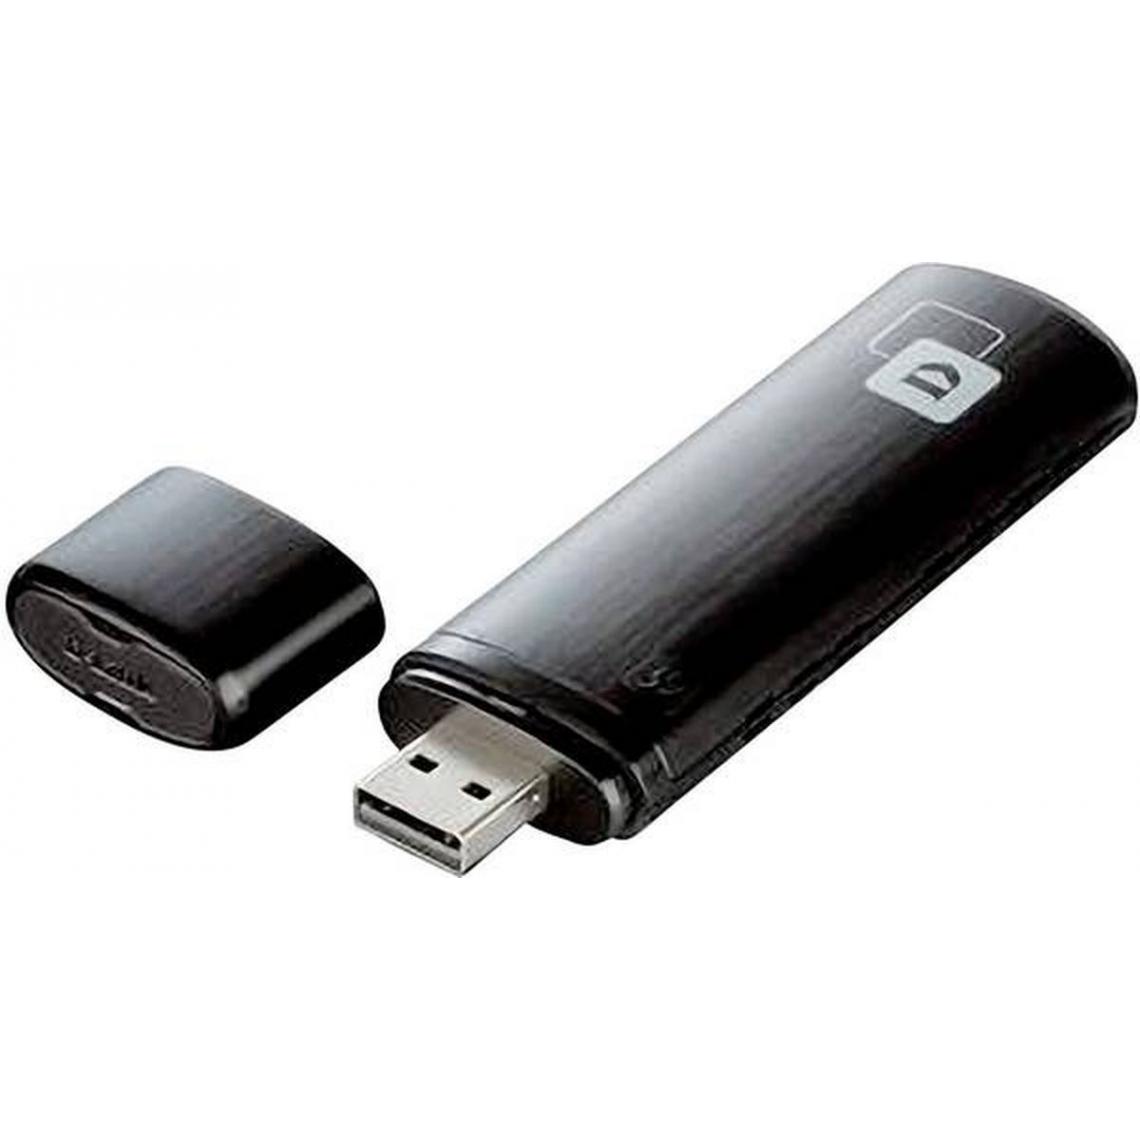 D-Link - Clé USB WiFi 802.11 AC Dual Band - Clé USB Wifi